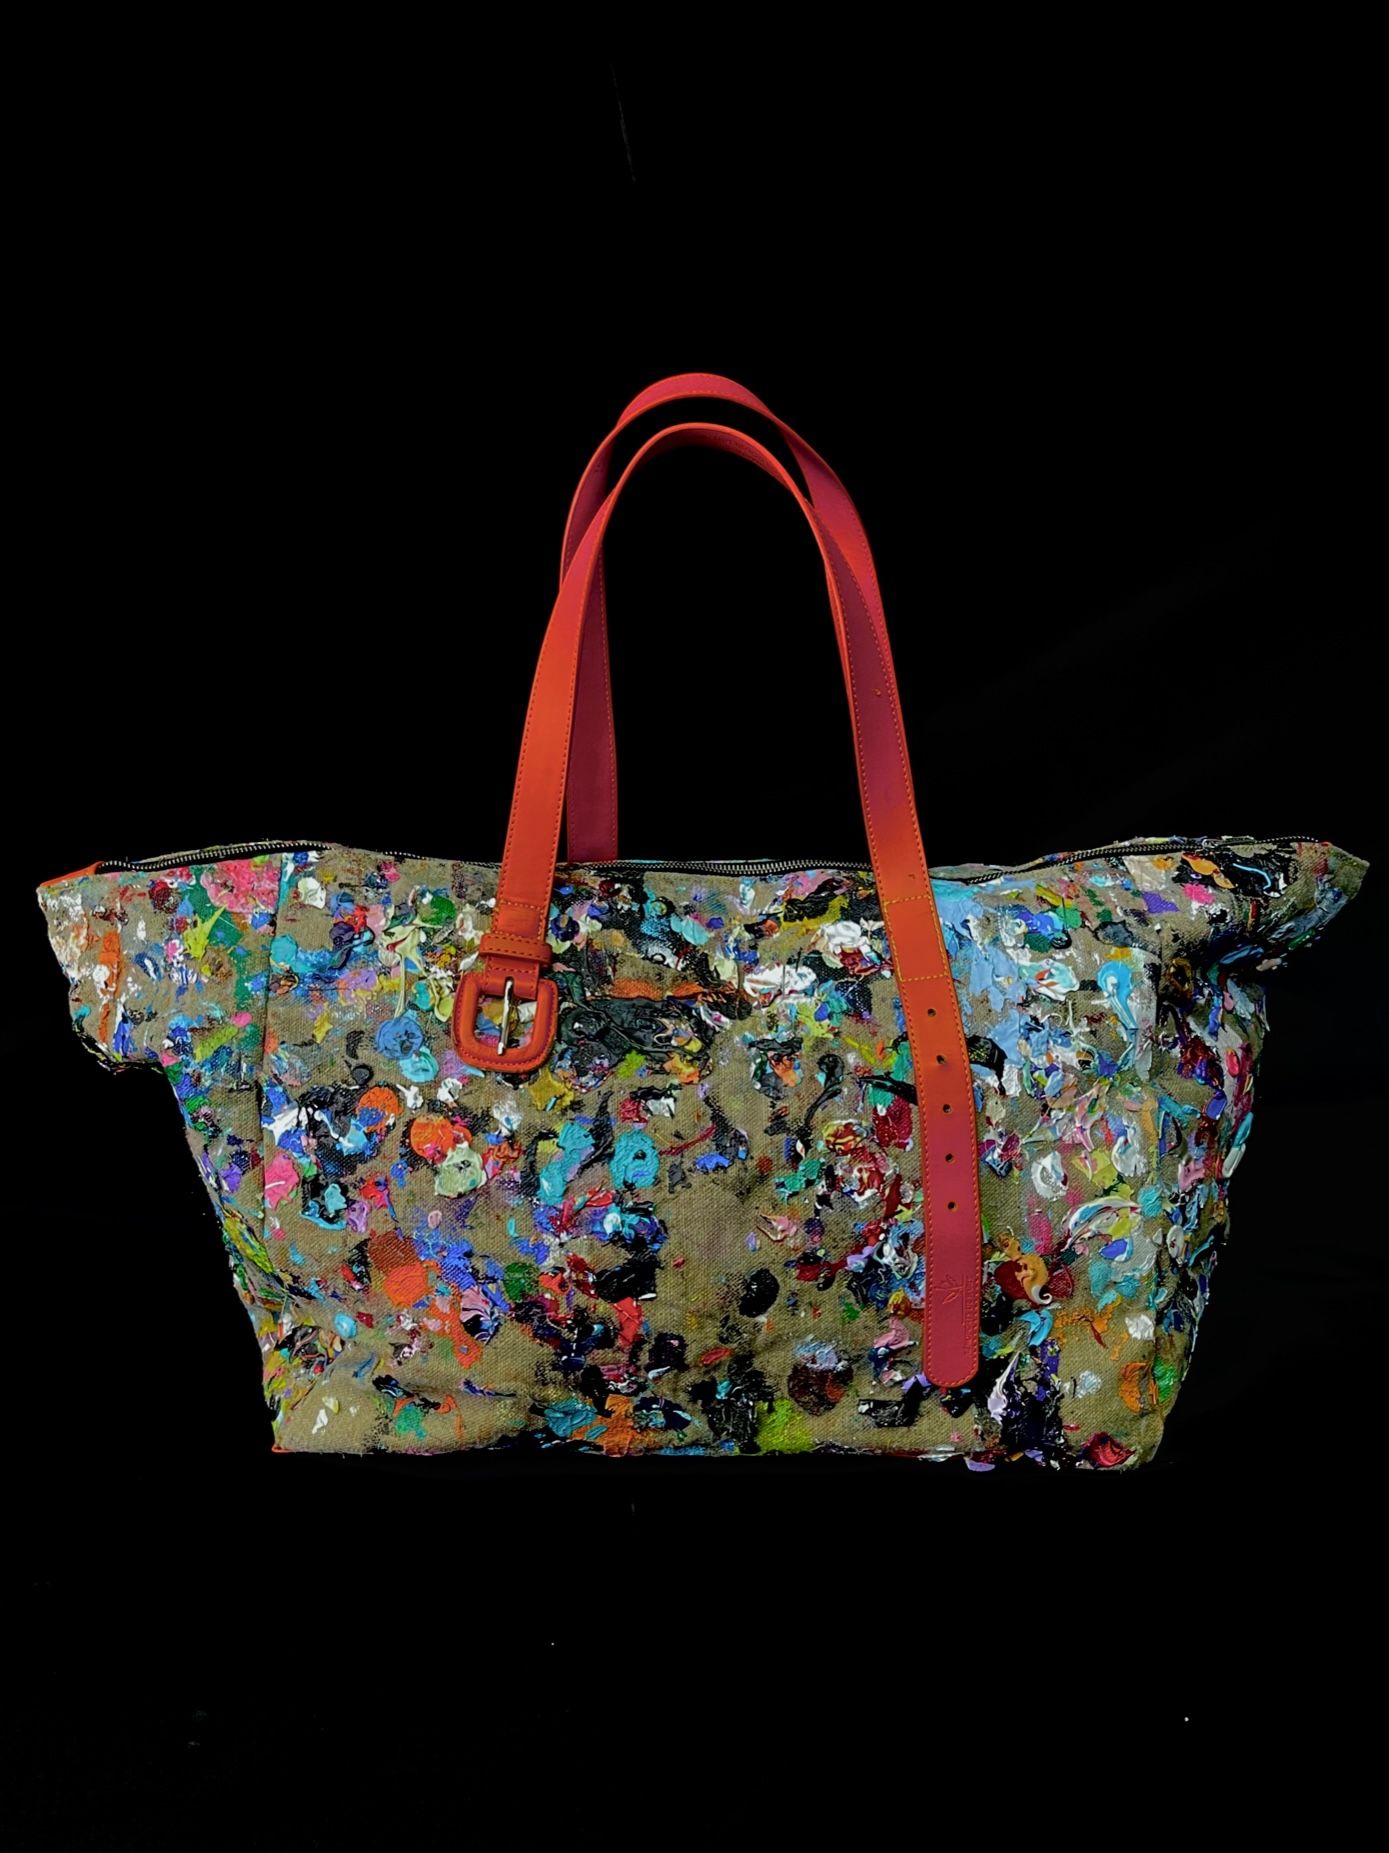 Eduardo GUELFENBEIN 旅行袋

复古手提包，艺术家Eduardo Guelfenbein的画作，巴黎机场的回收带，回收把手。